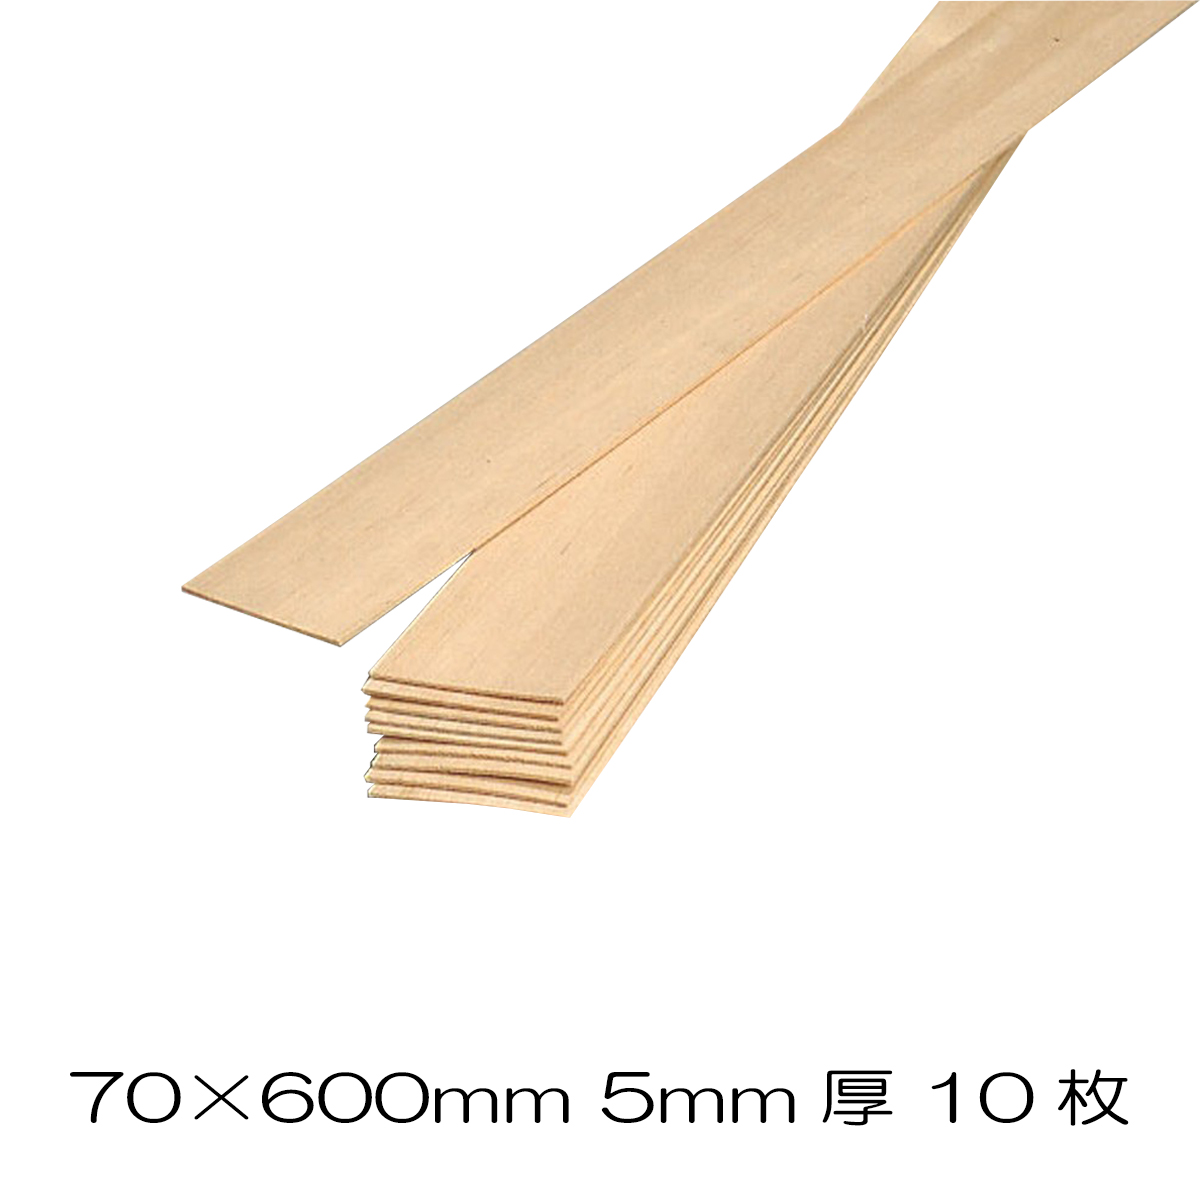 自由工作や木工作品作りに バルサ板材 70x600mm 10枚組 限定モデル 5mm 木材 板 木工 DIY 手作り バルサ材 品質検査済